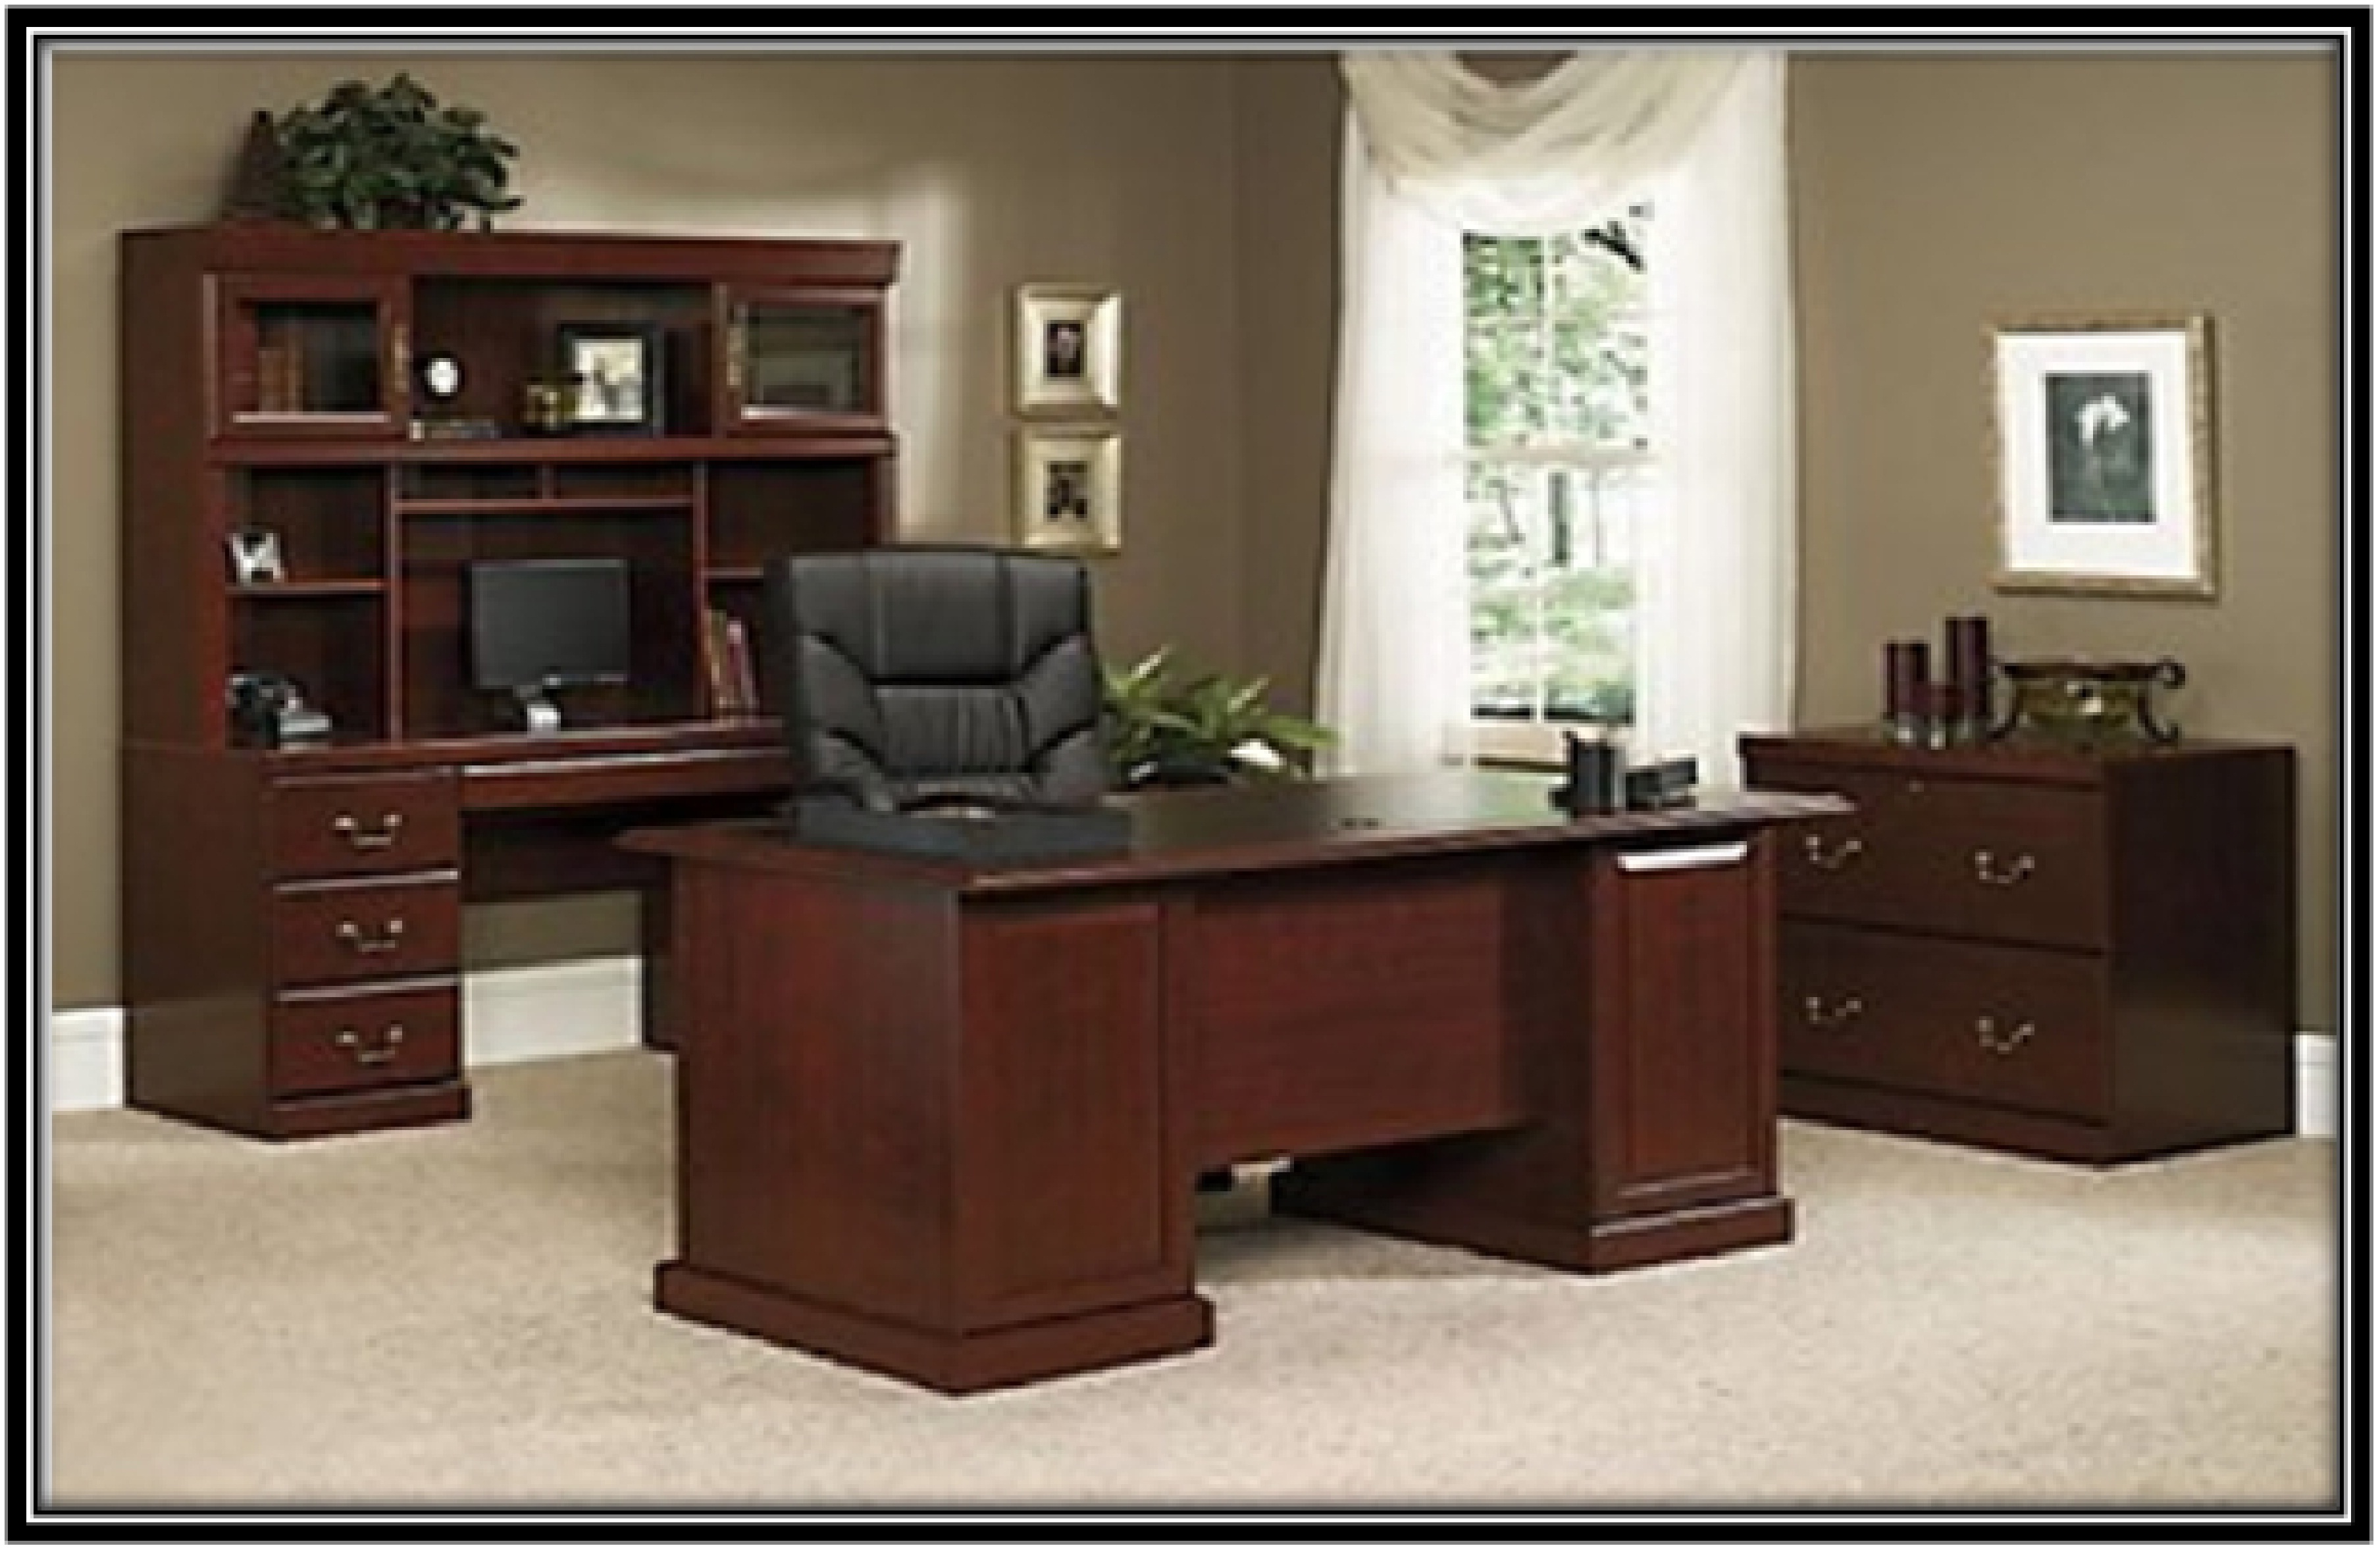 An executive desk set - home decor idea